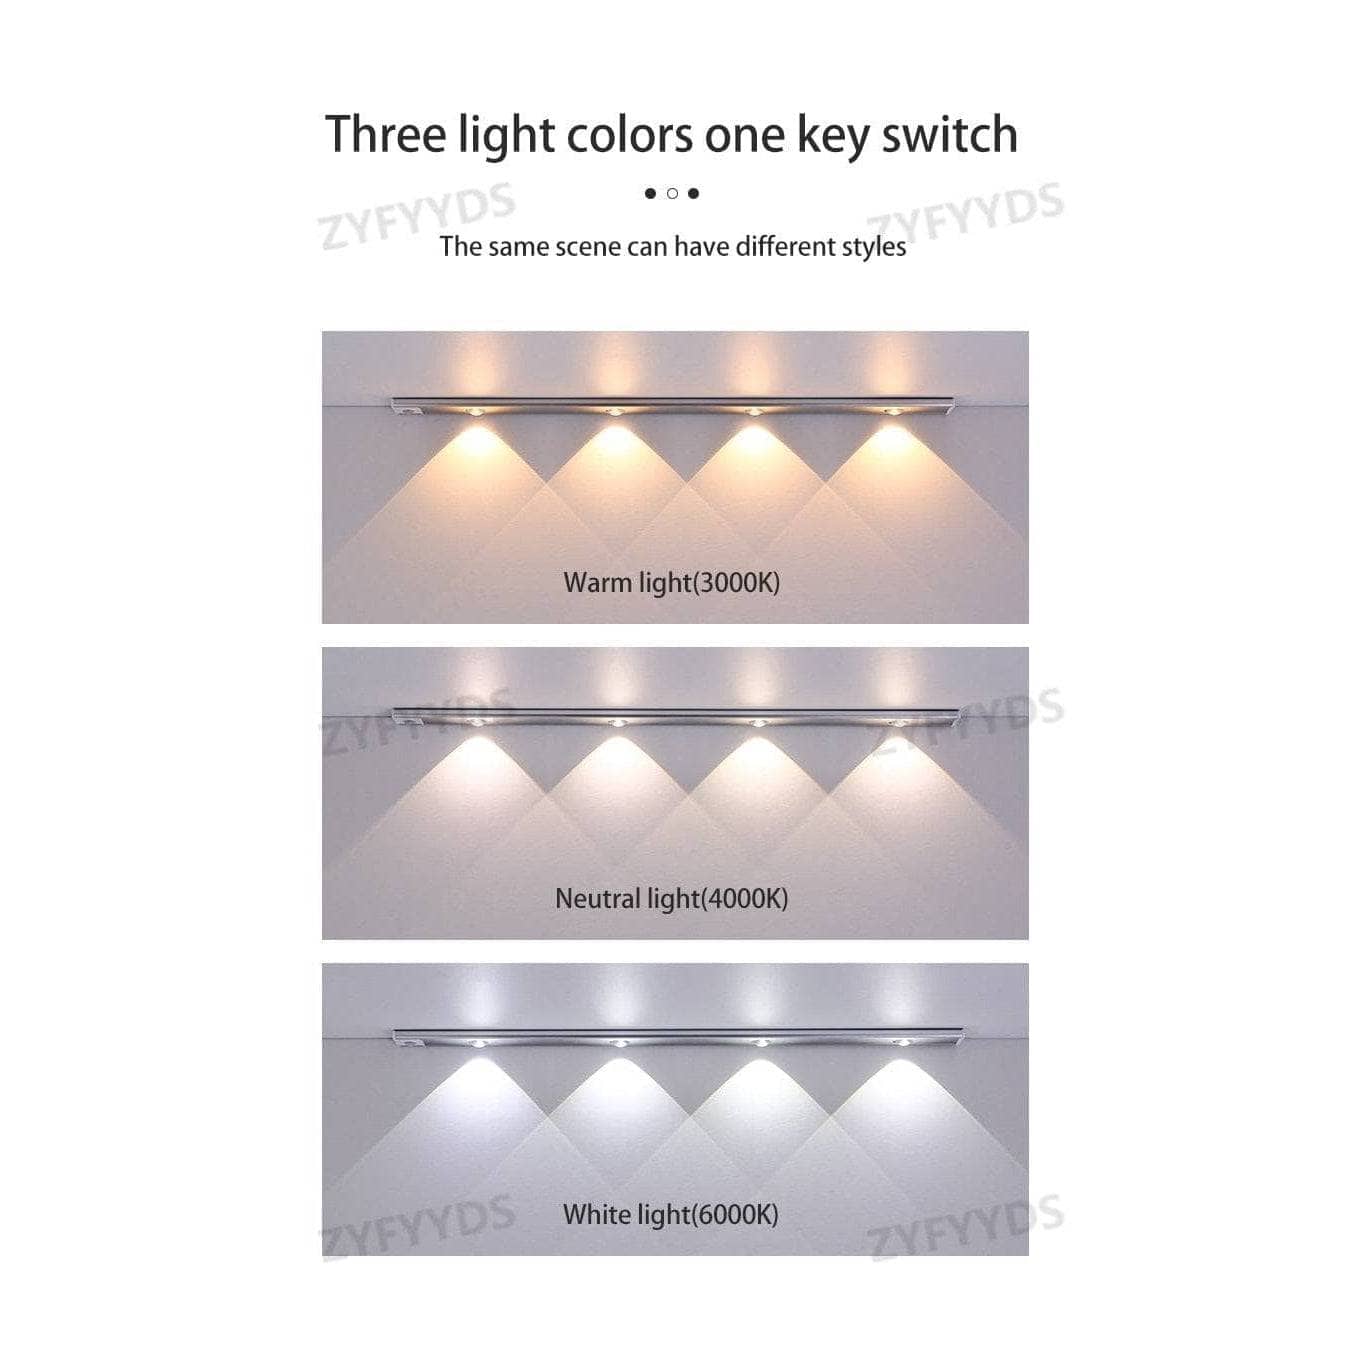 LED Motion Sensor Cabinet Light-LED-Unbranded-www.PhoneGuy.com.au